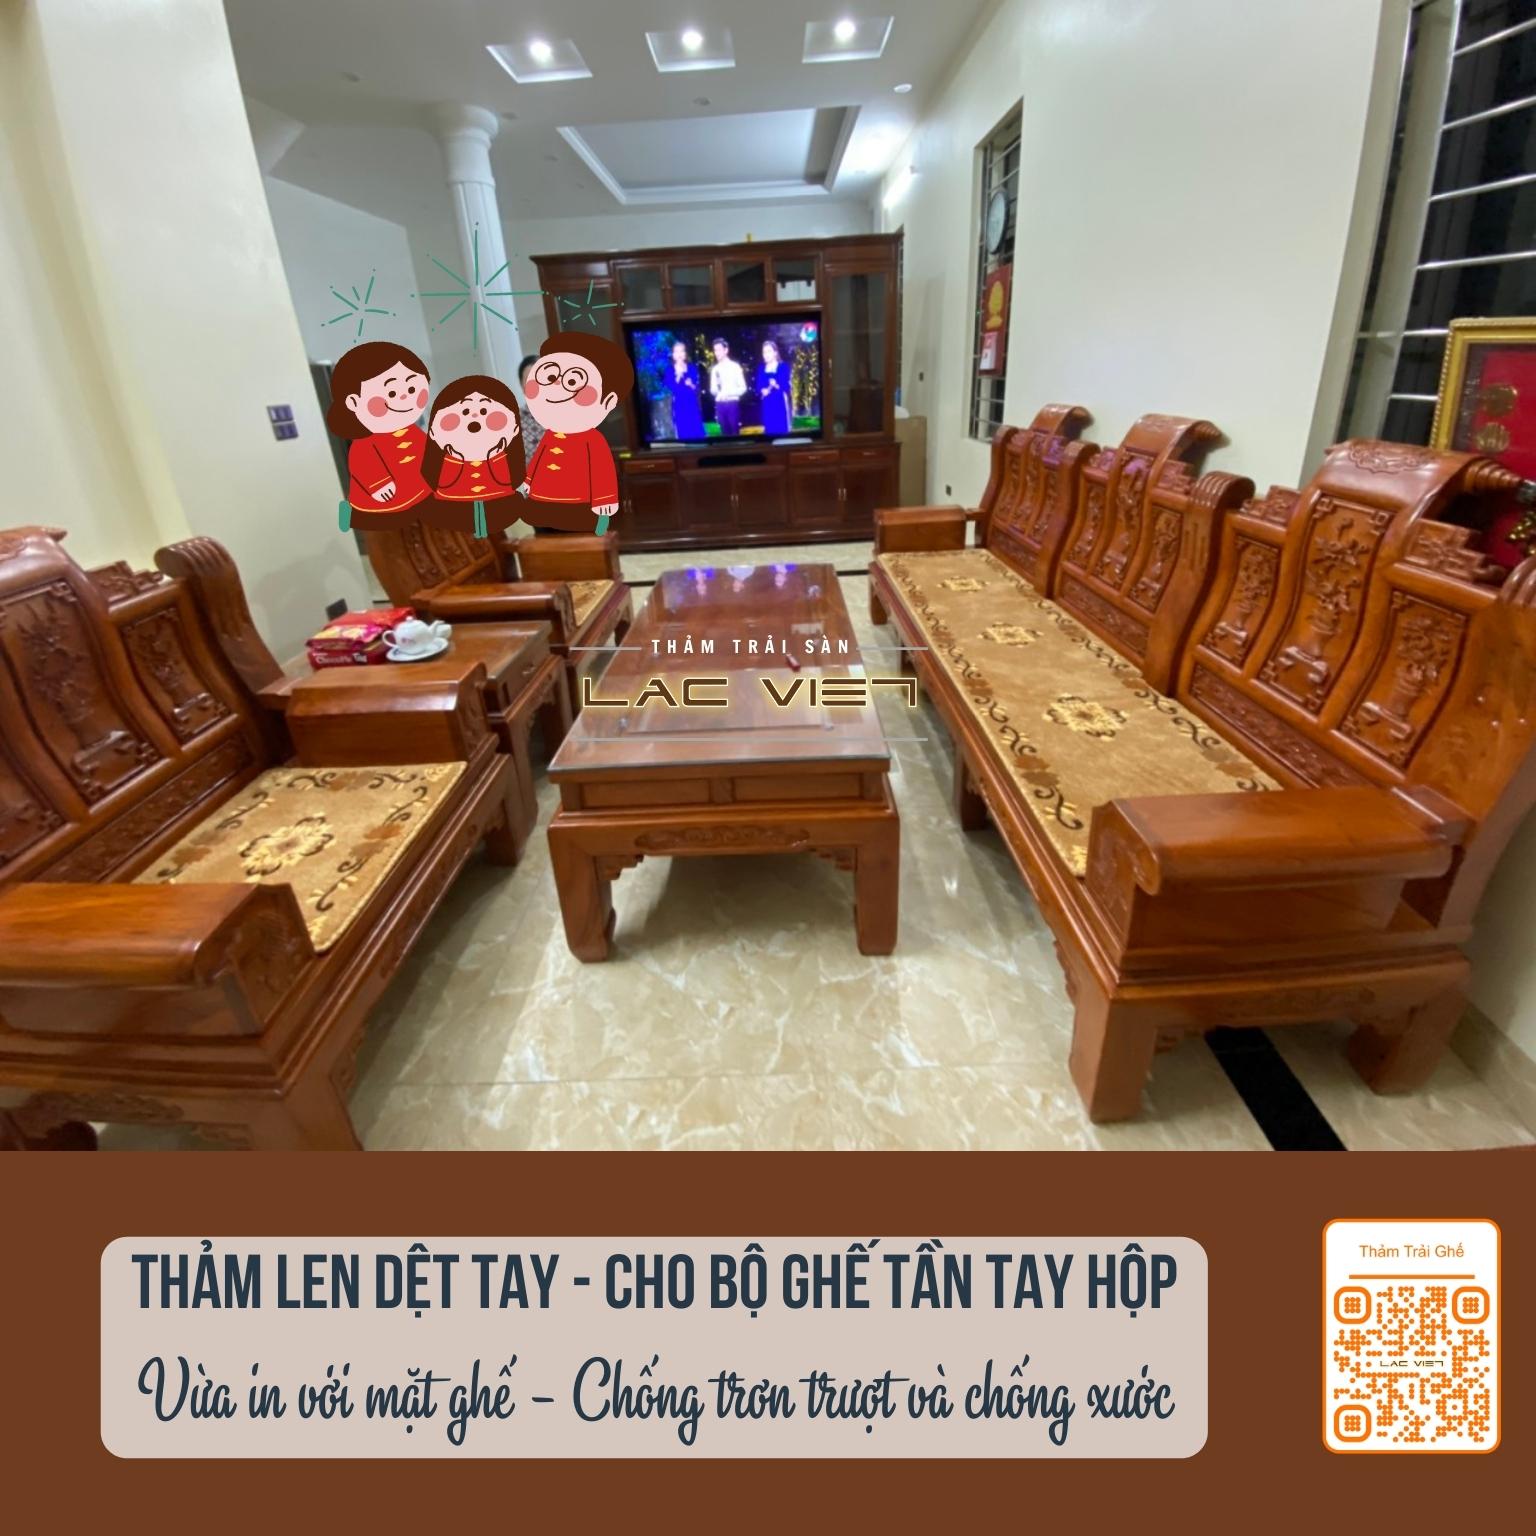 tham-trai-san-lac-viet-thảm trải ghế tần hộp len dệt thủ công (1)